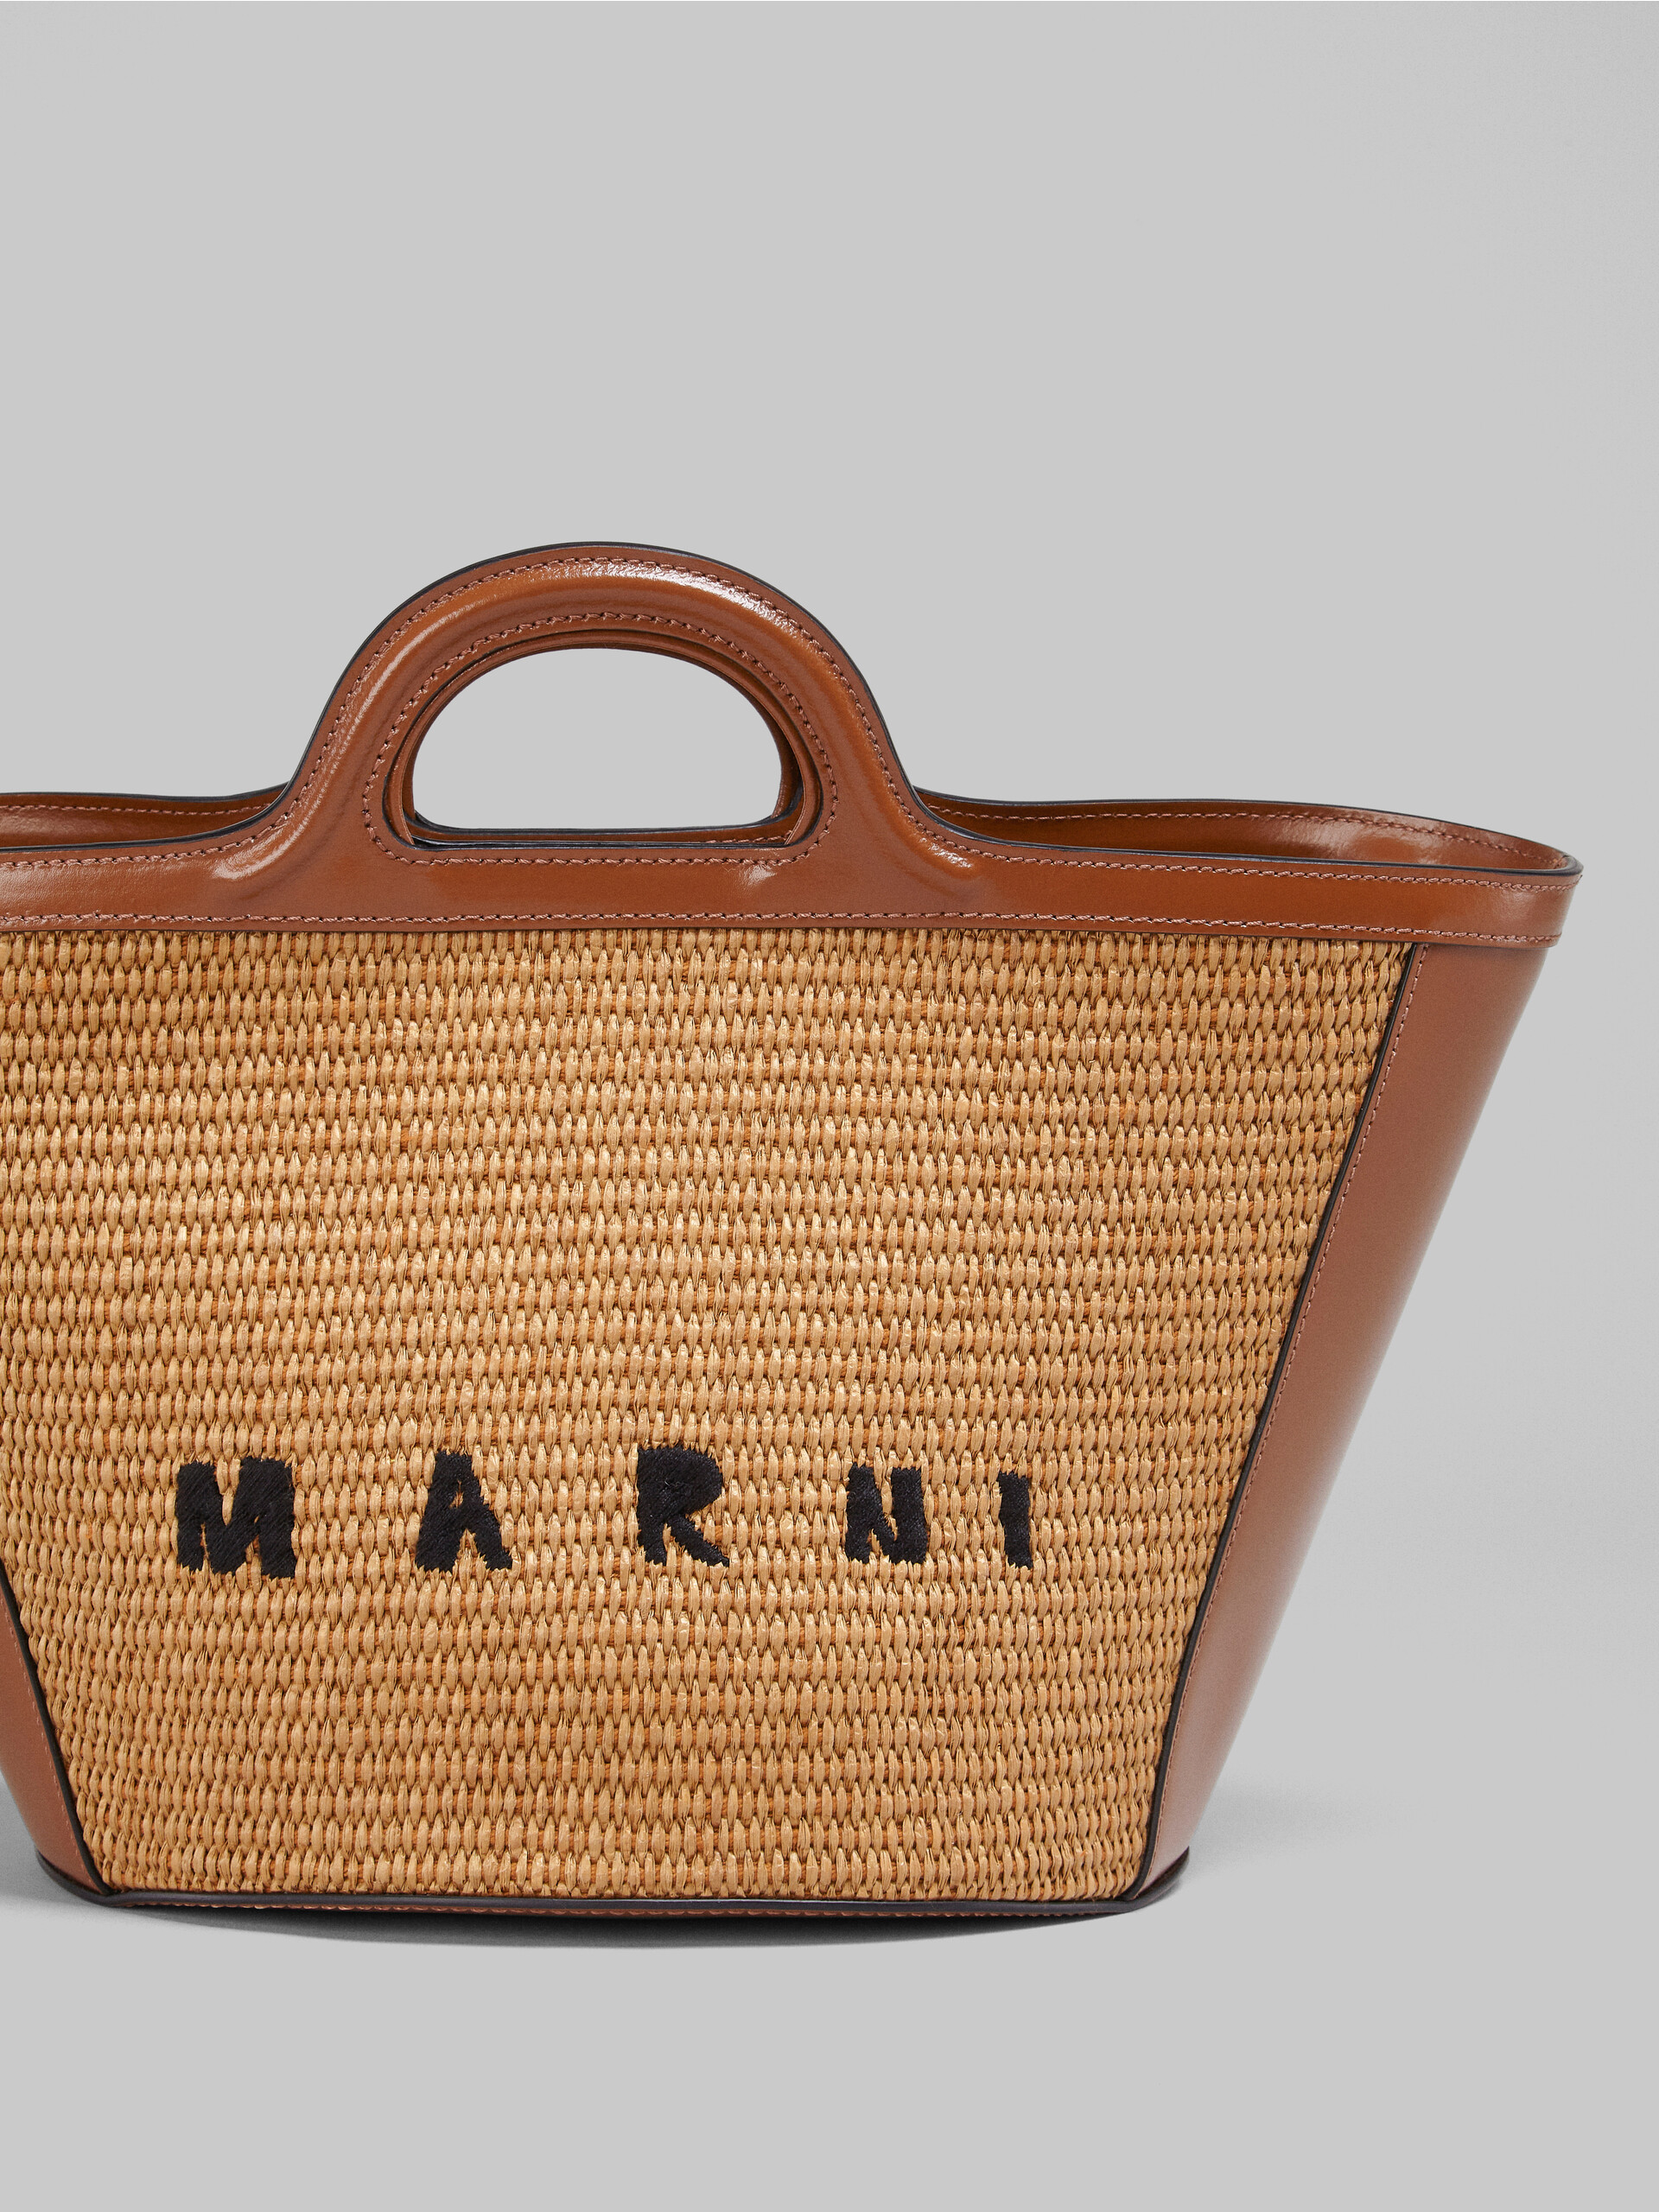 Brown leather small TROPICALIA SUMMER bag - Handbag - Image 4